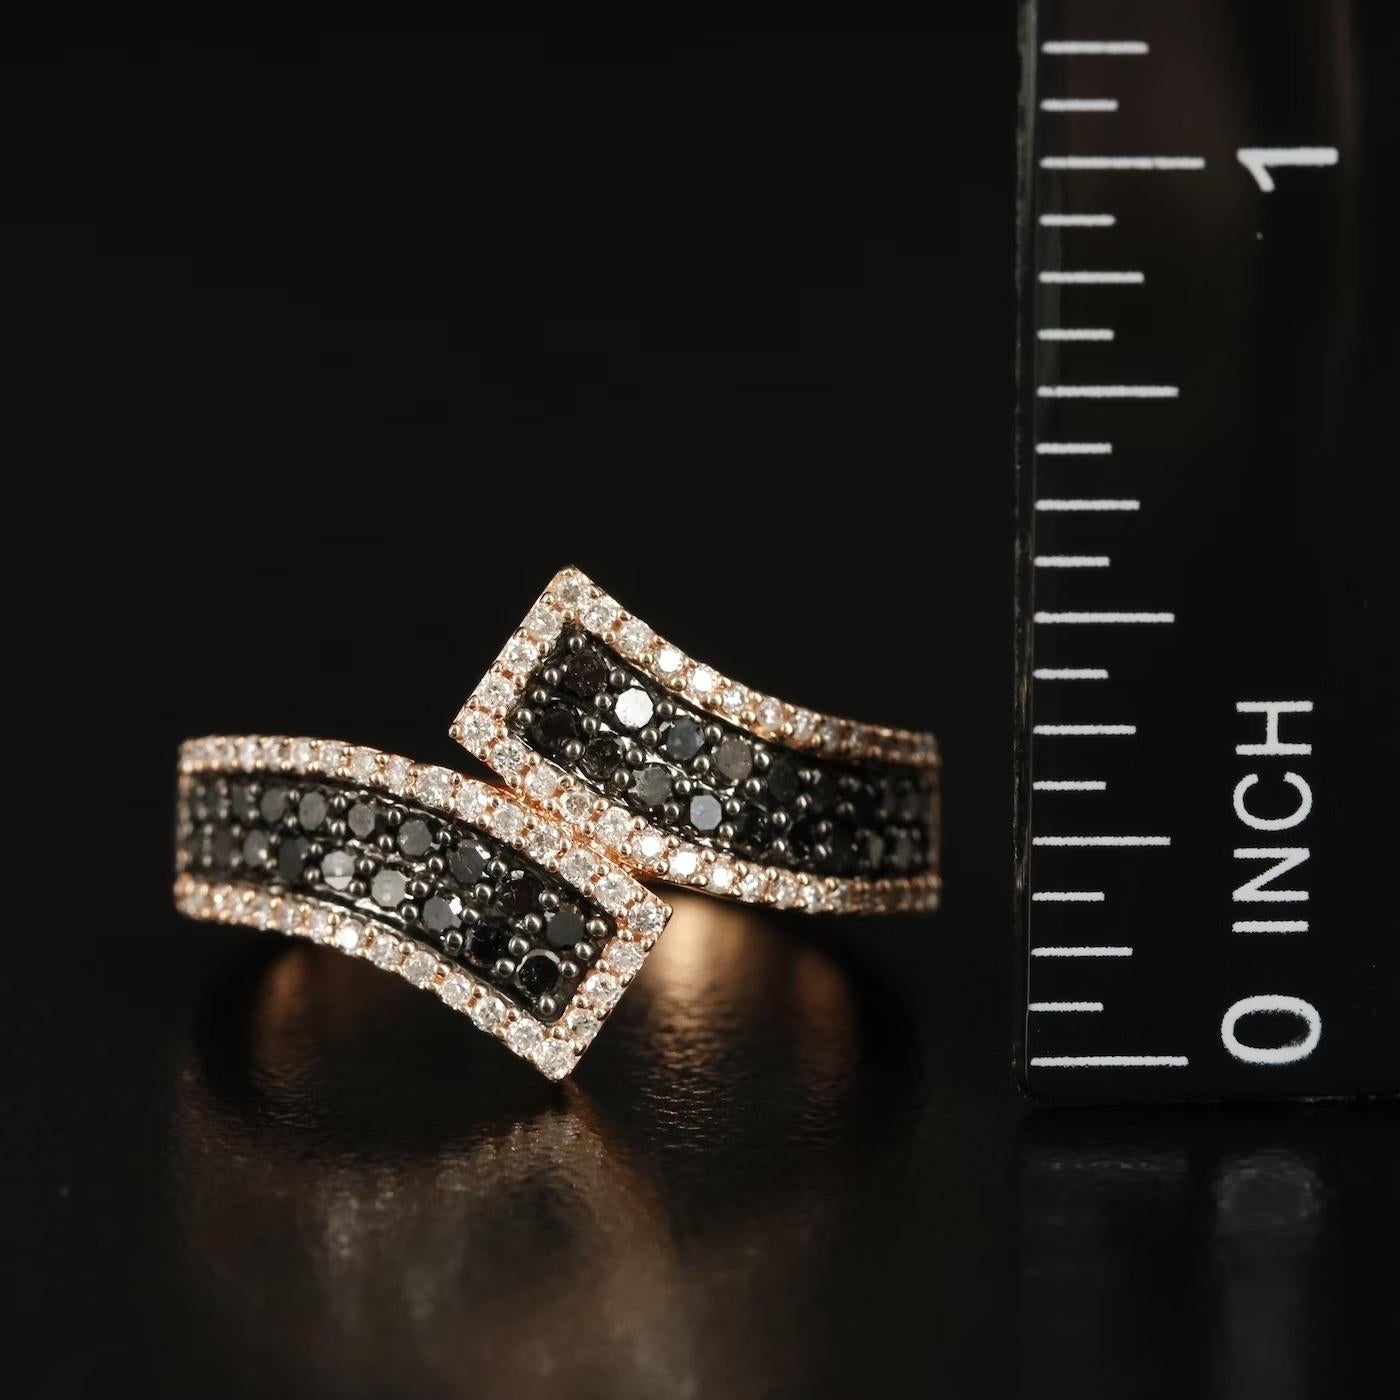 Taille ronde Karen Marchesa Bague bypass de créatrice en or 14 carats avec diamants 1,05 carat, 4450 $, Neuf